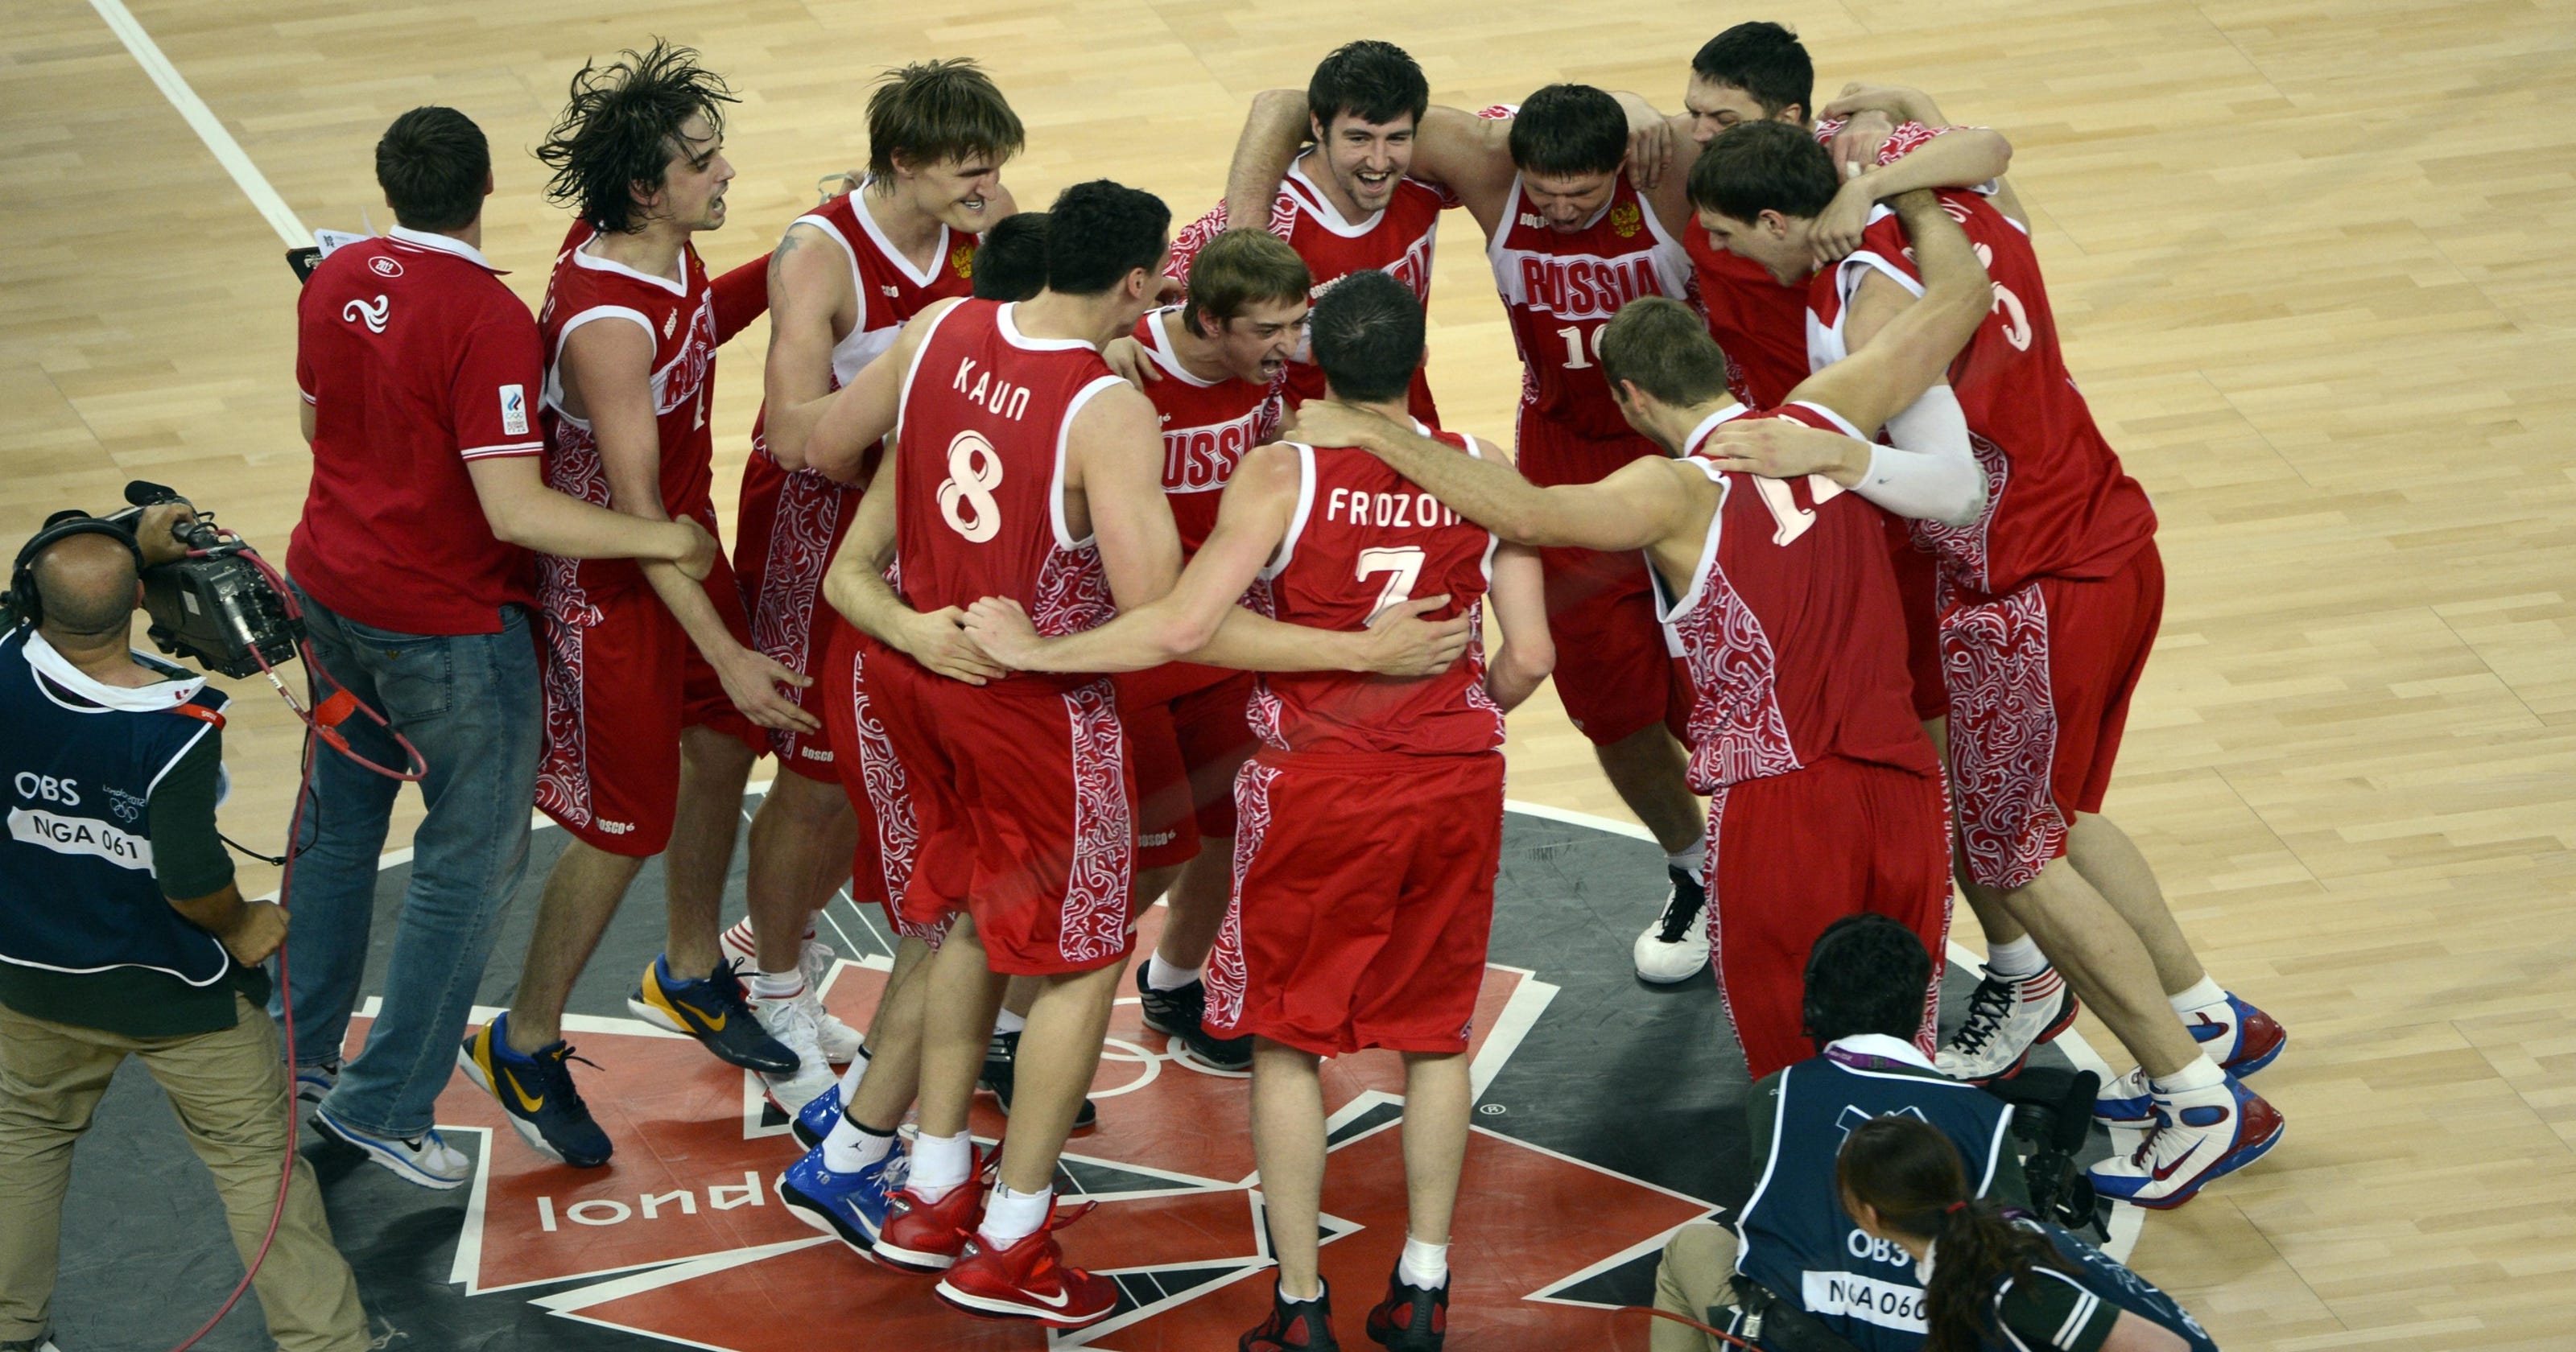 Сайт российского баскетбола. Русские баскетболисты. Кирс баскетбол. Баскетболисты России на фоне людей.